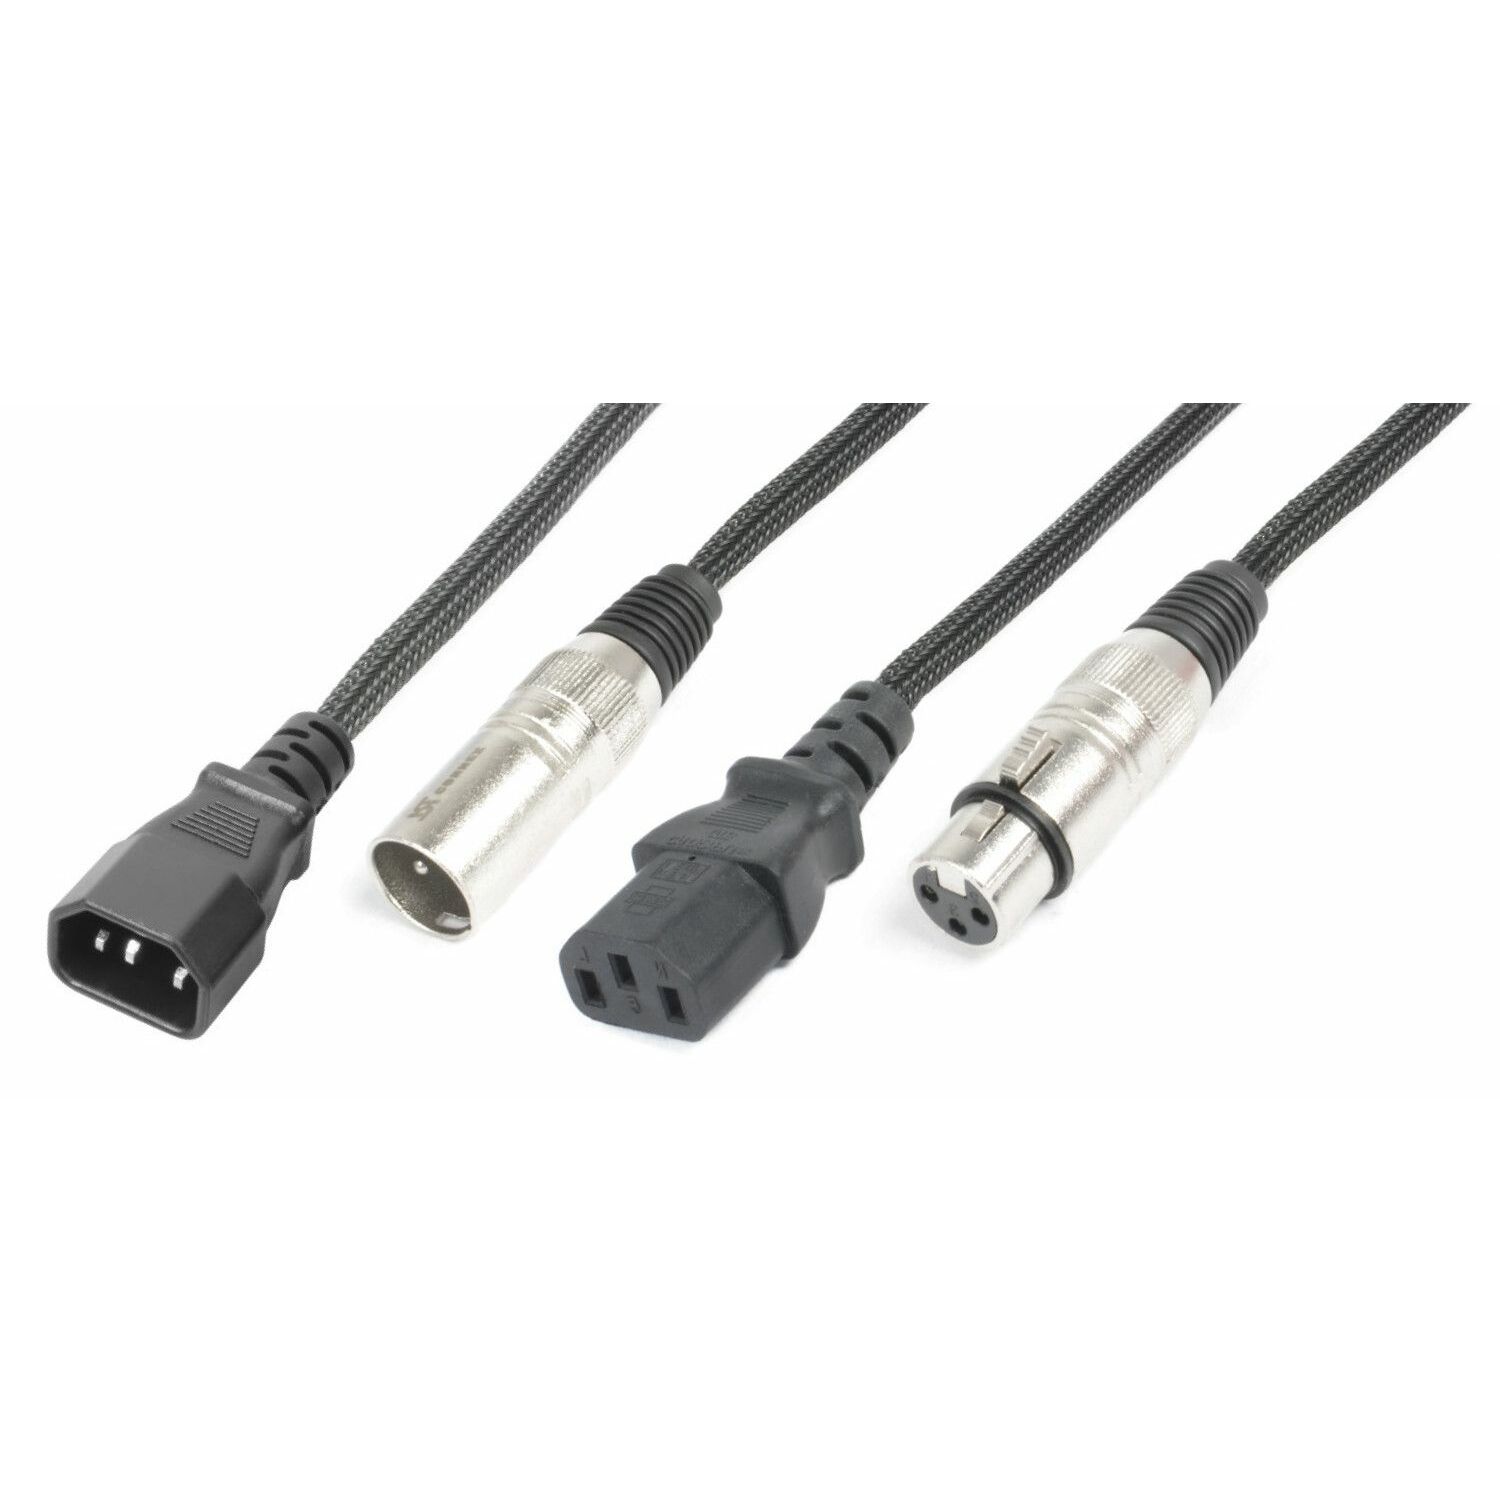 Combikabel – PD Connex LDI05 combikabel voor koppeling van lichteffecten, 5 meter. Twee kabels in één!